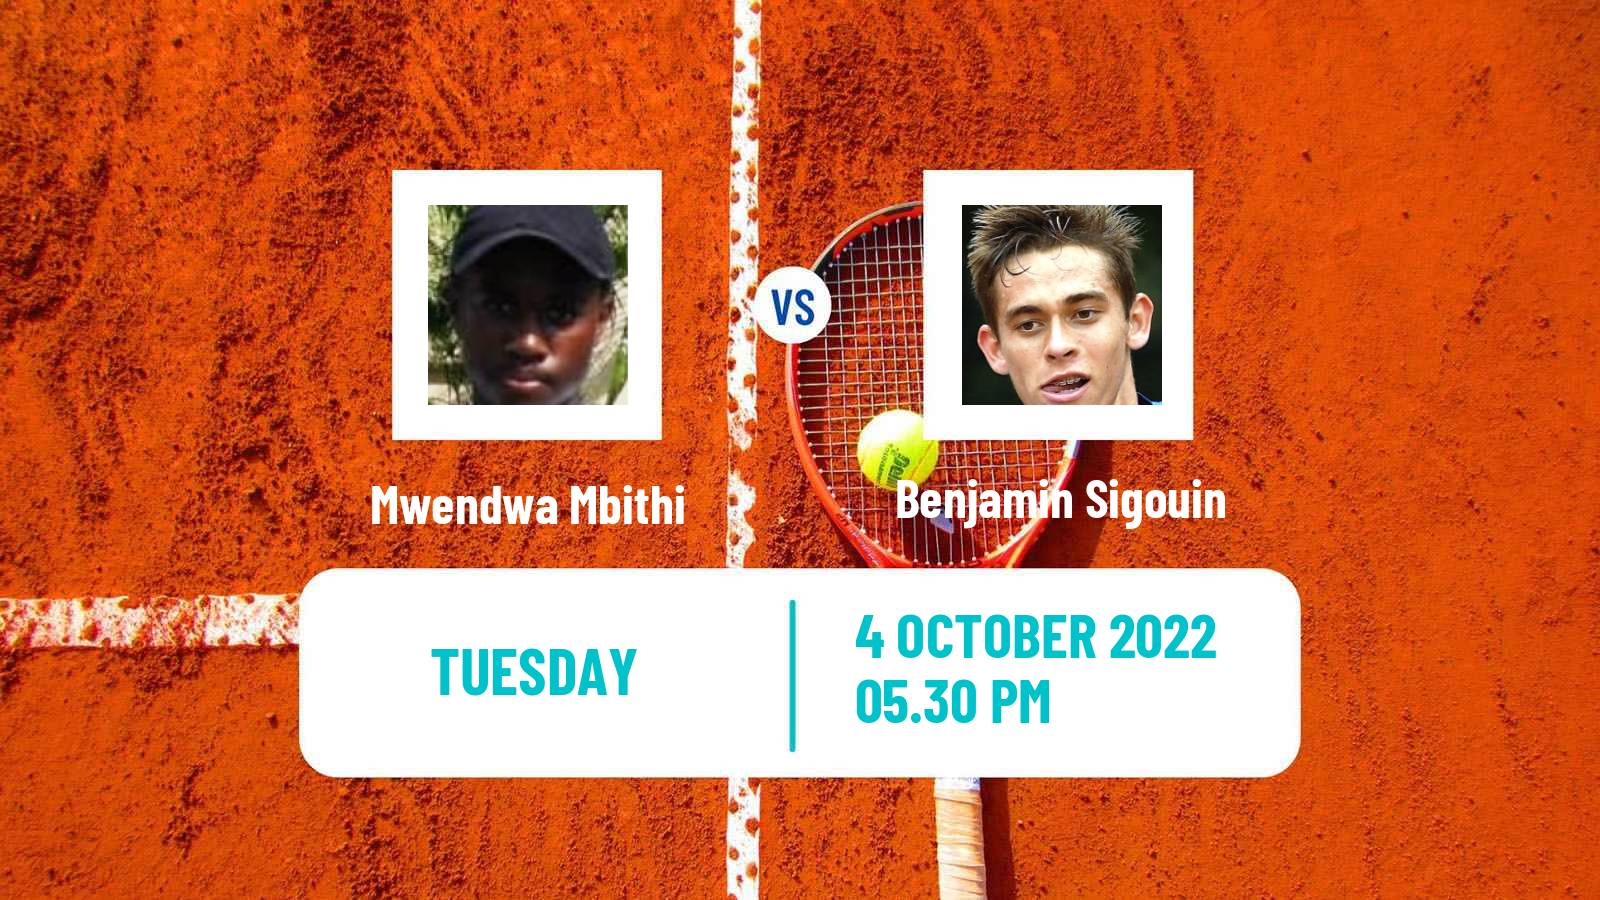 Tennis ITF Tournaments Mwendwa Mbithi - Benjamin Sigouin